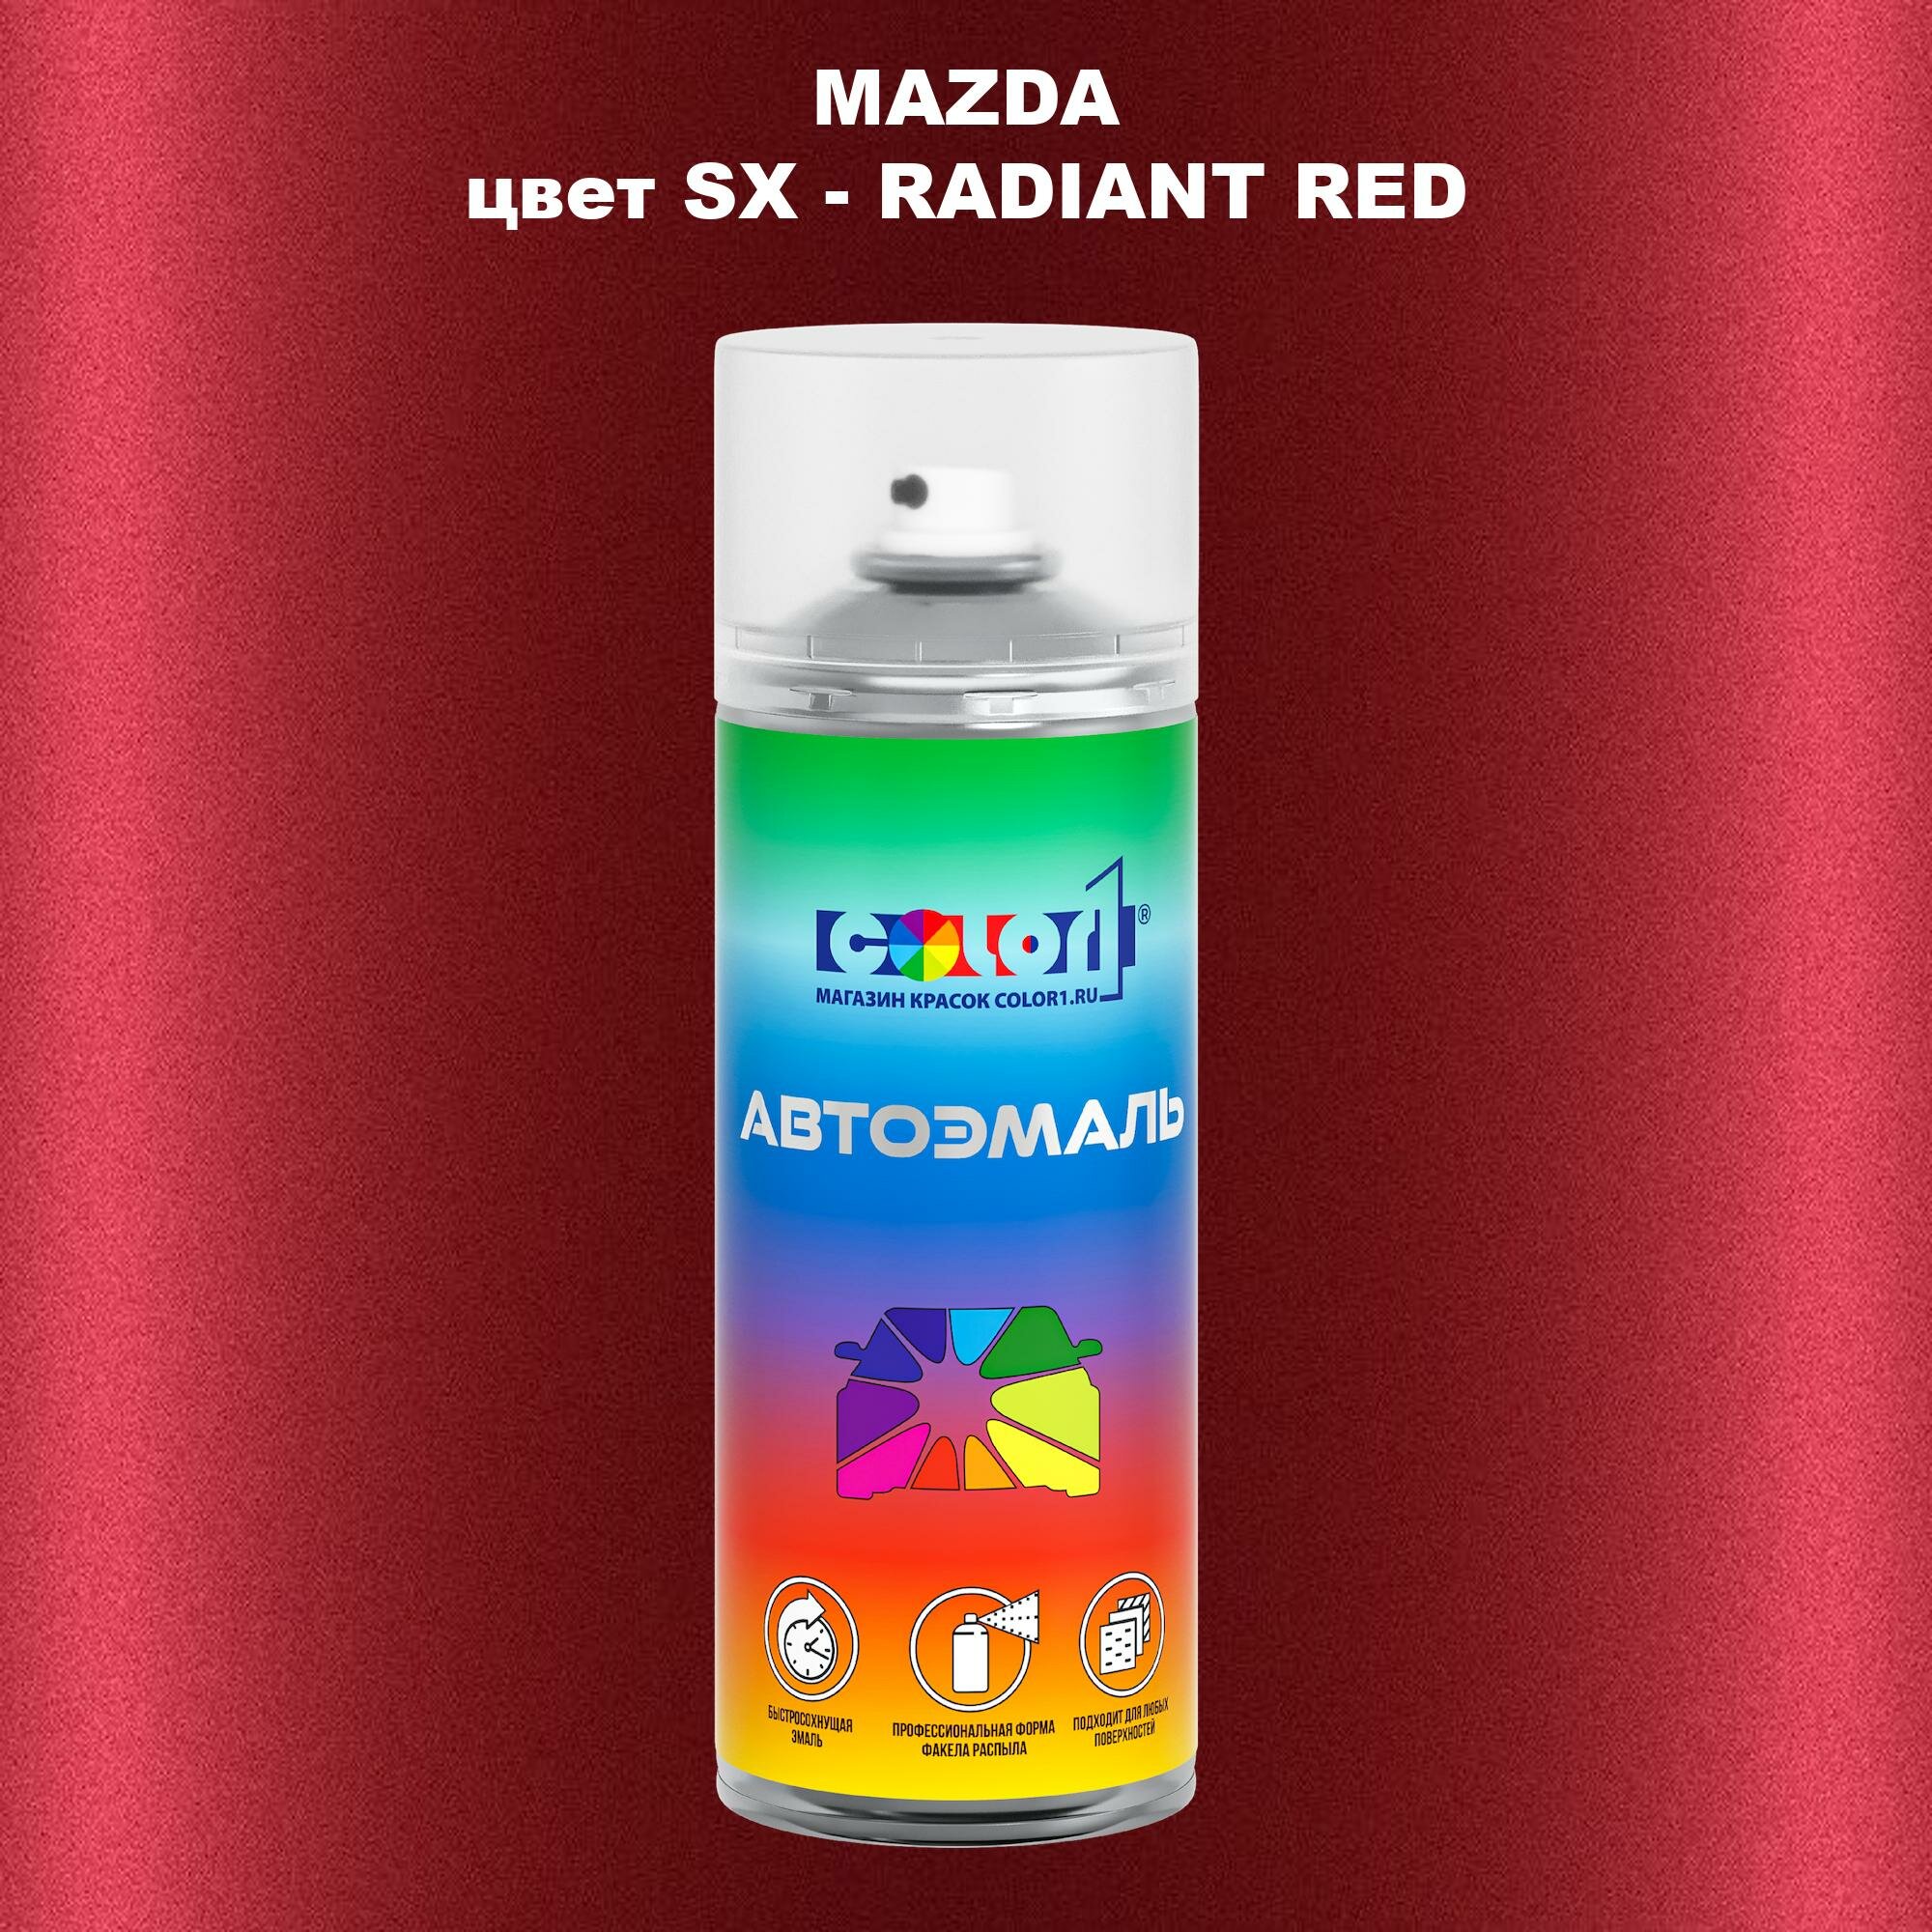 Аэрозольная краска COLOR1 для MAZDA, цвет SX - RADIANT RED